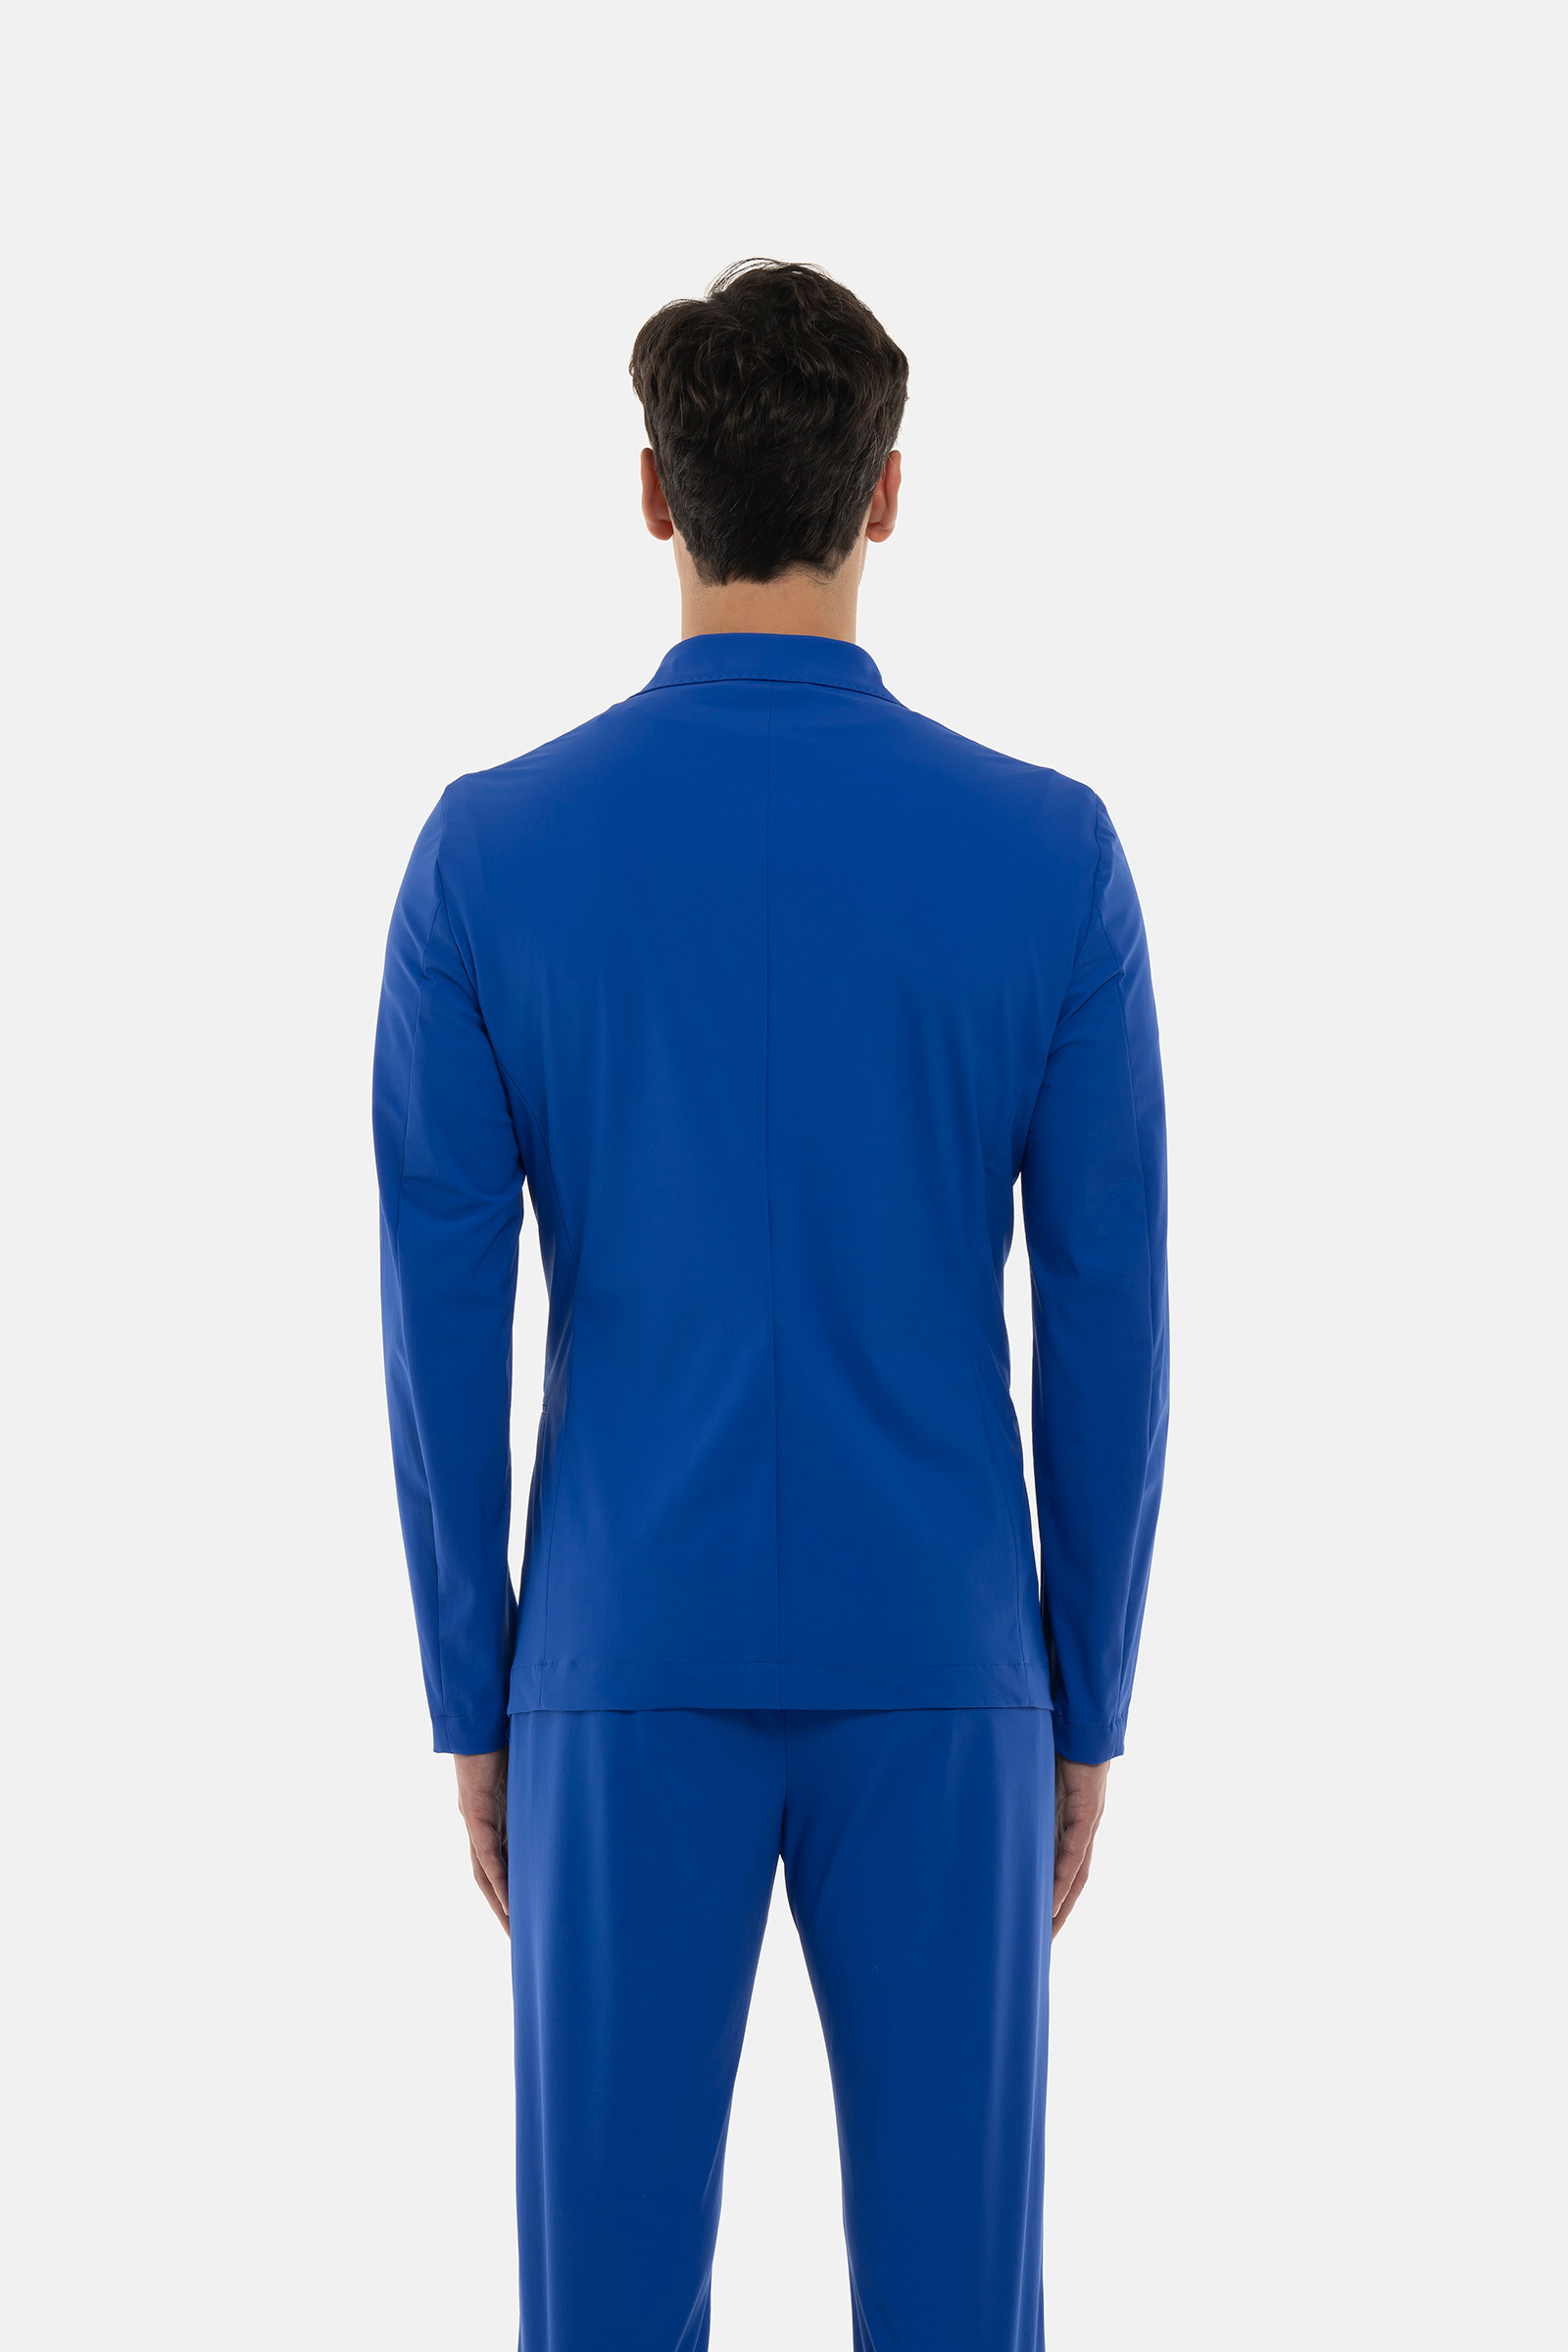 FUTURE LAB CLASSIC JACKET - BLUE - Hydrogen - Luxury Sportwear